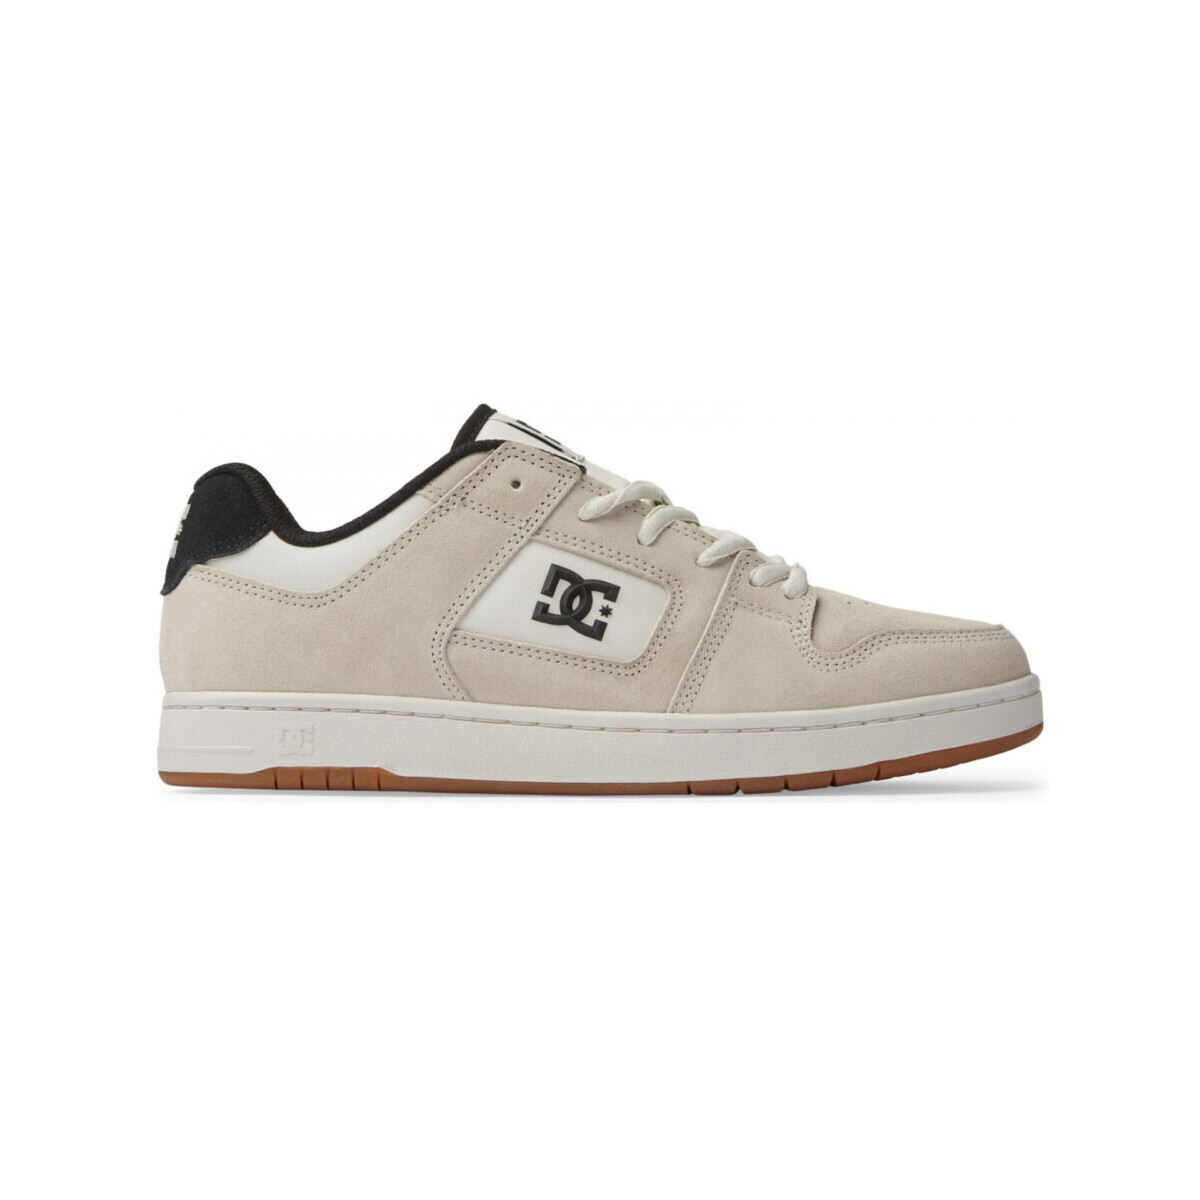 Zapatos Hombre Zapatos de skate DC Shoes Manteca 4 s Blanco